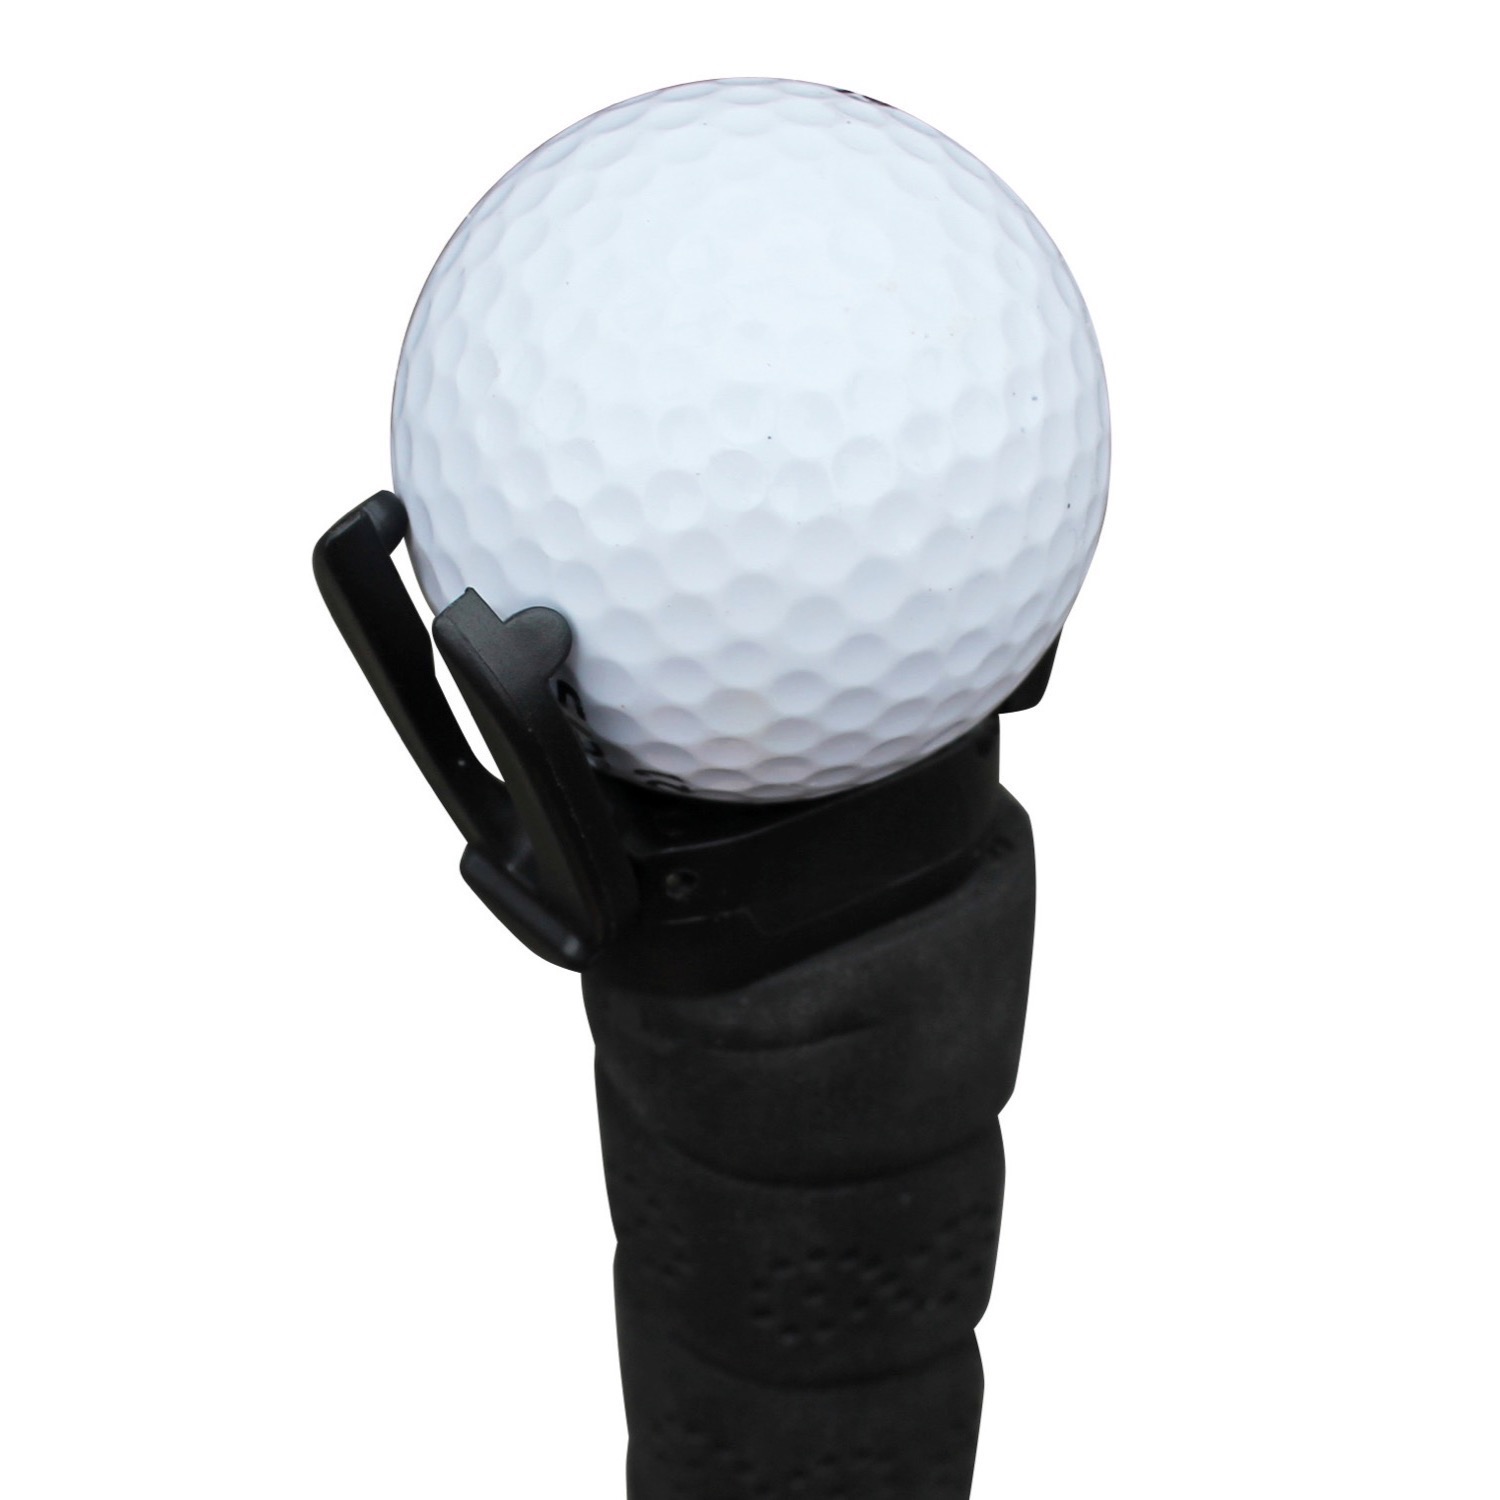 Masters ’Klippa’ Golf Ball Pick-Up